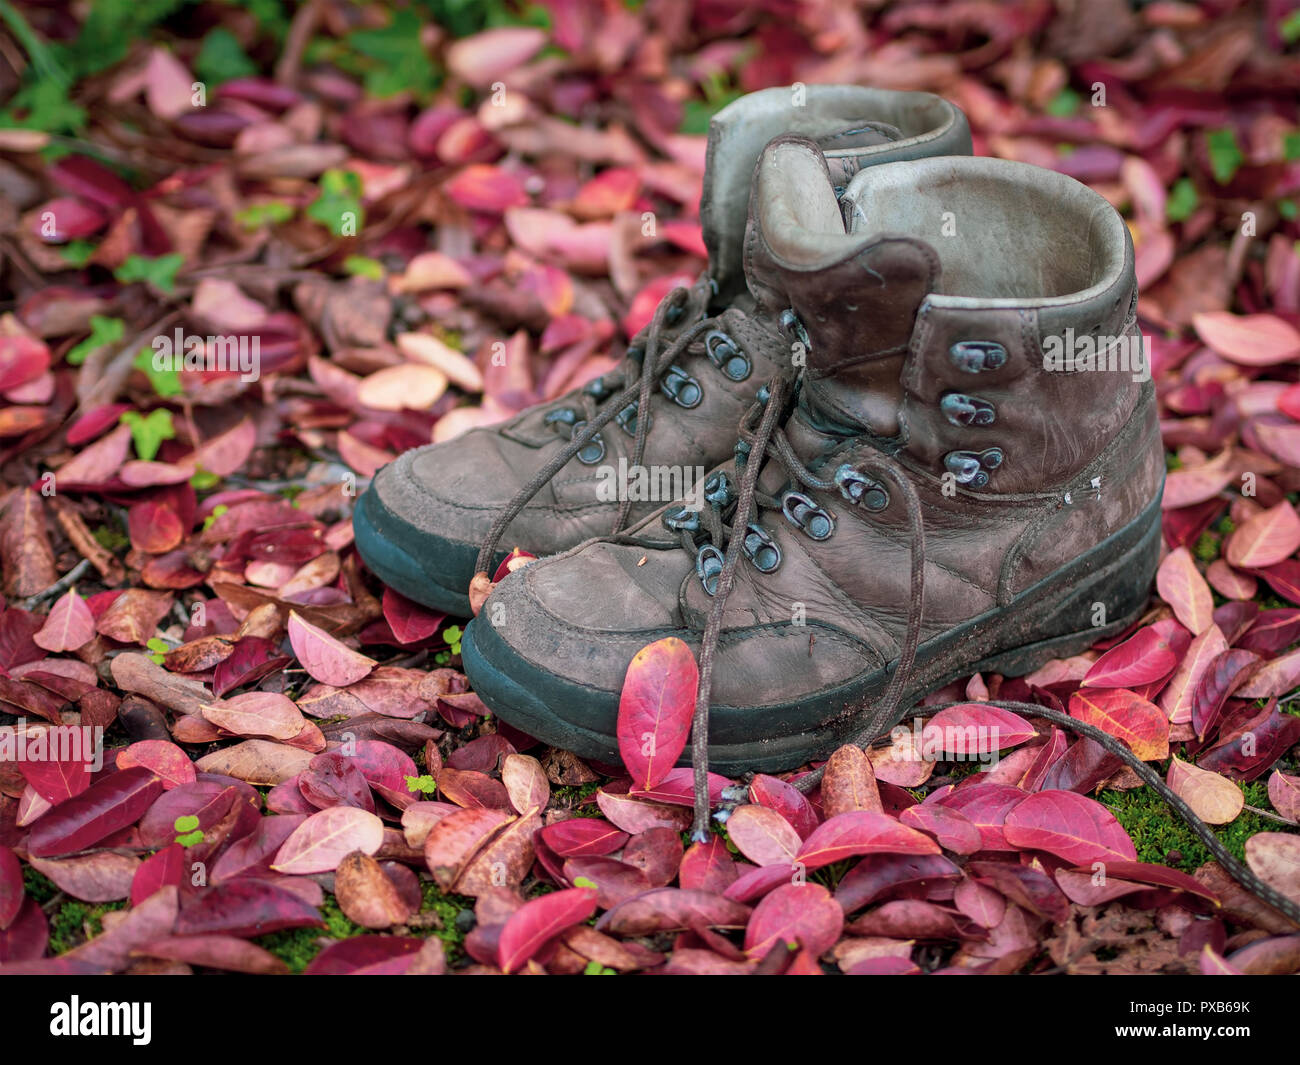 Wanderschuhe, Unbranded und gut getragen, im Herbst fallen. Rote Blätter. Wandern im Herbst. Stockfoto